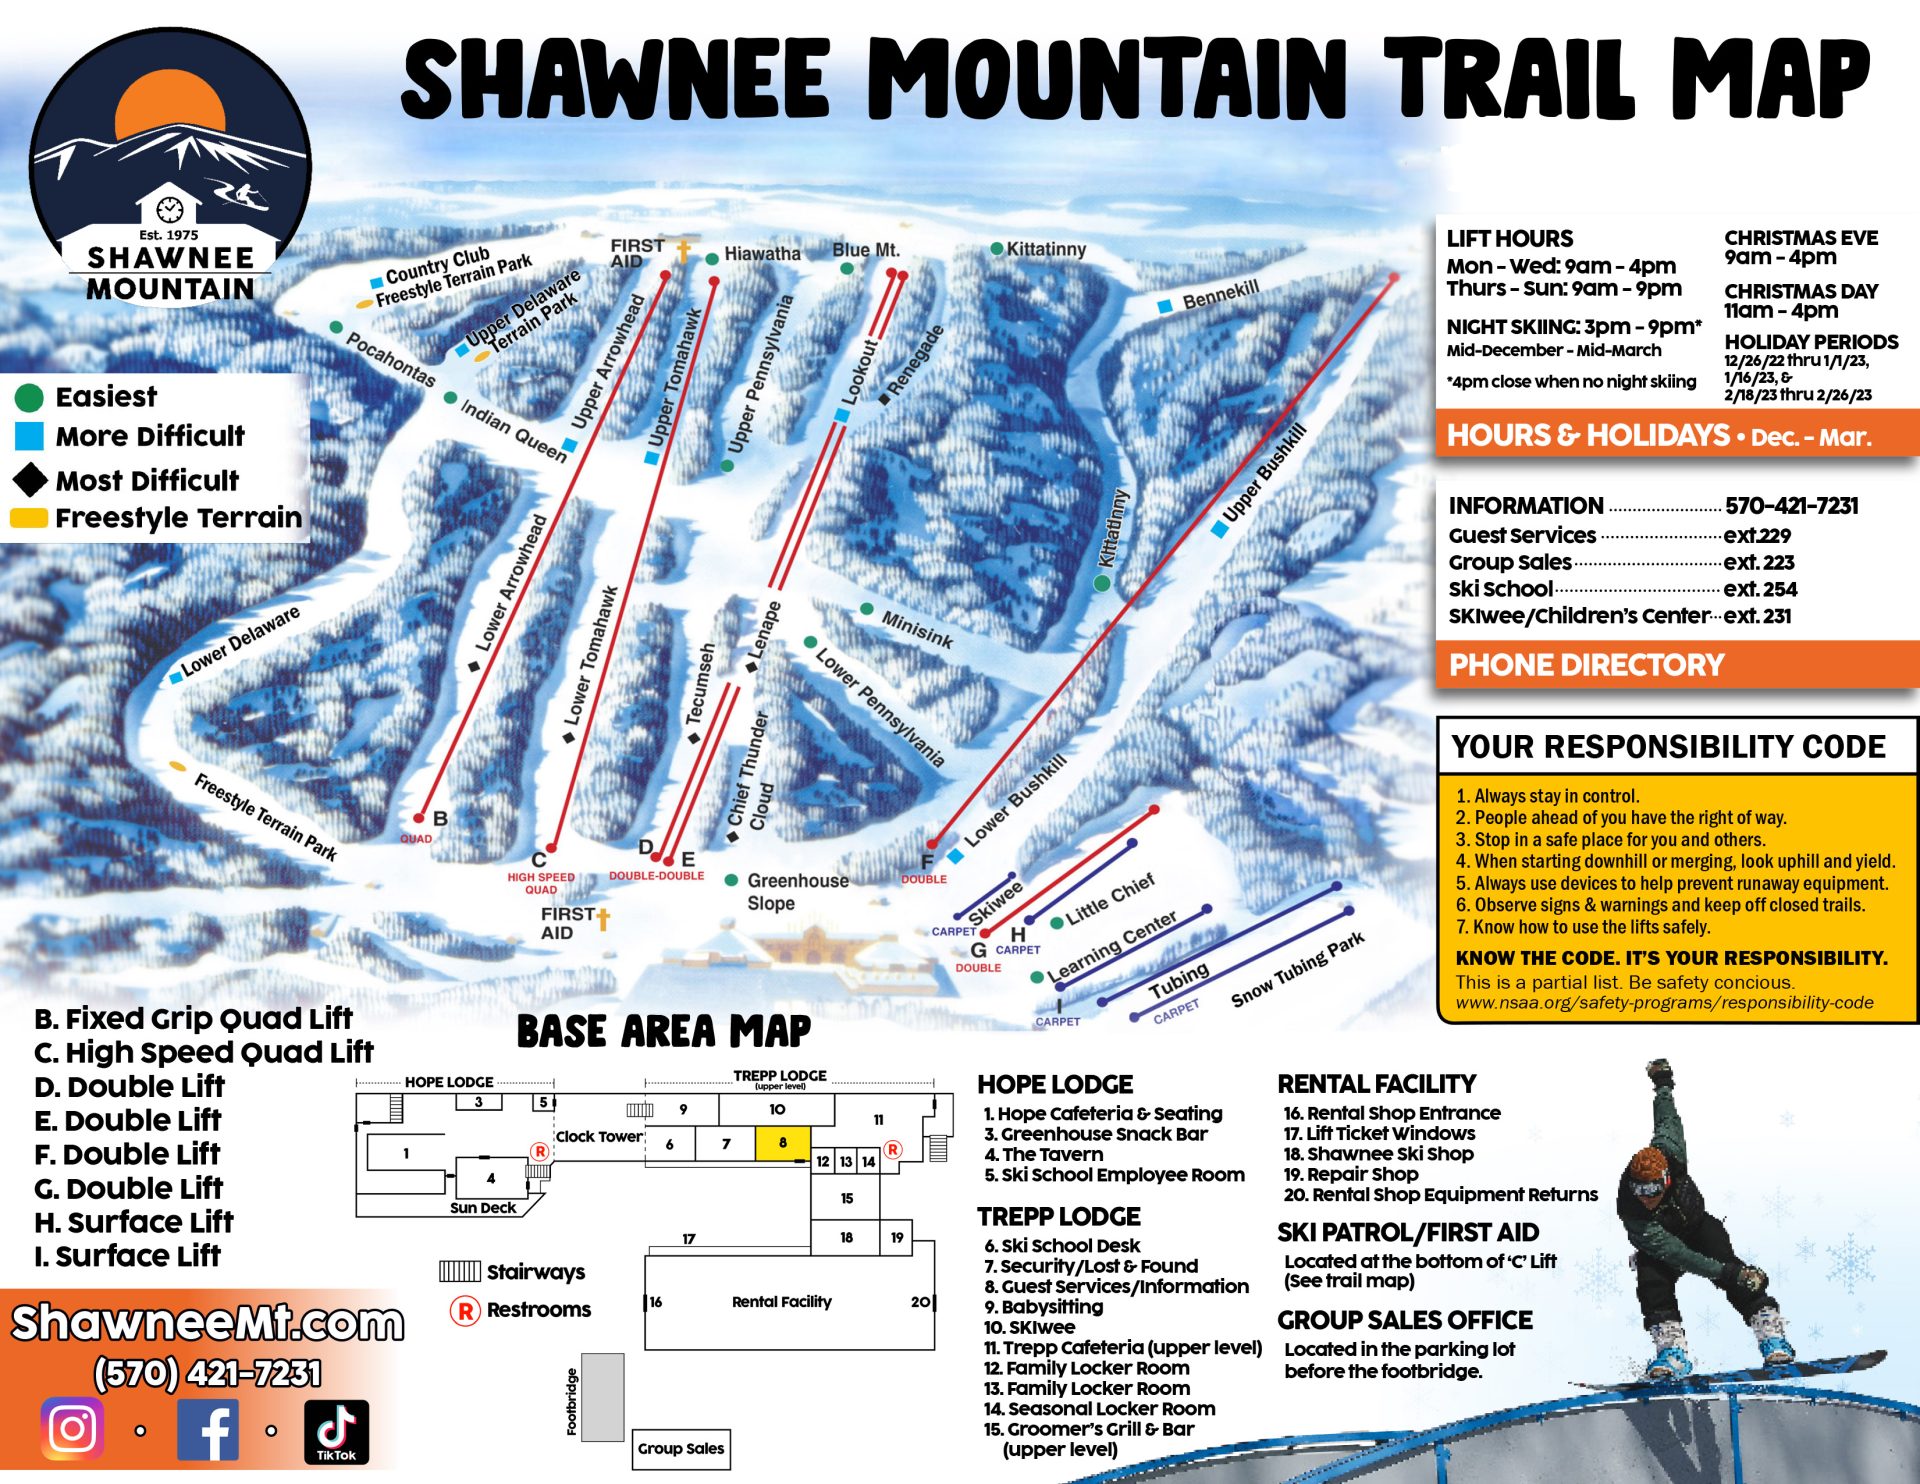 mapa da trilha shawnee